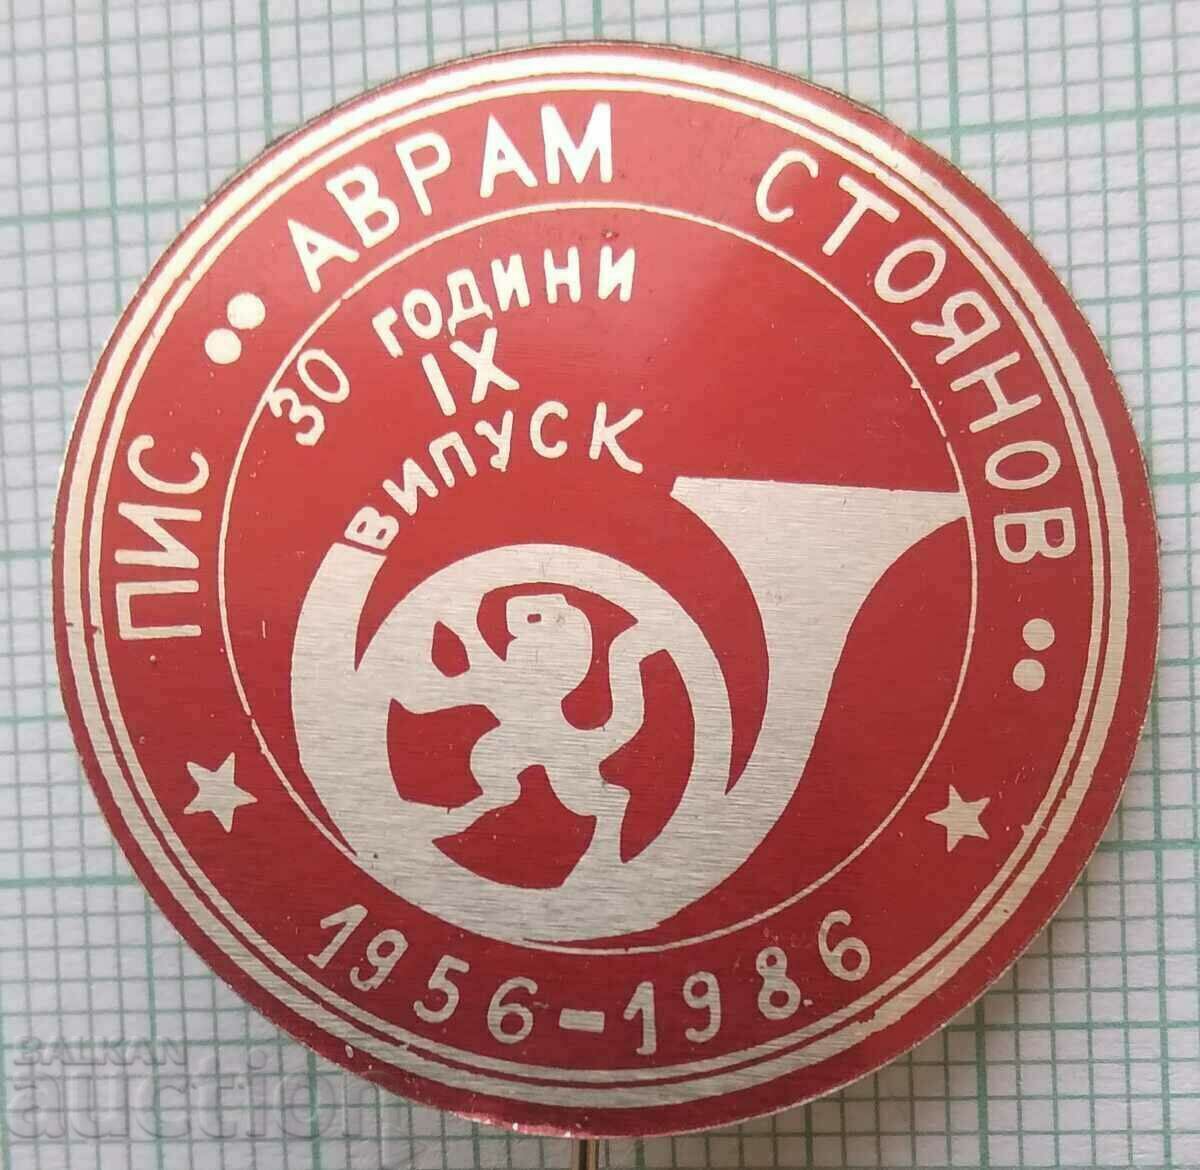 14466 Institutul Semisuperior al Comun. Avram Stoyanov - 30 de ani PIS